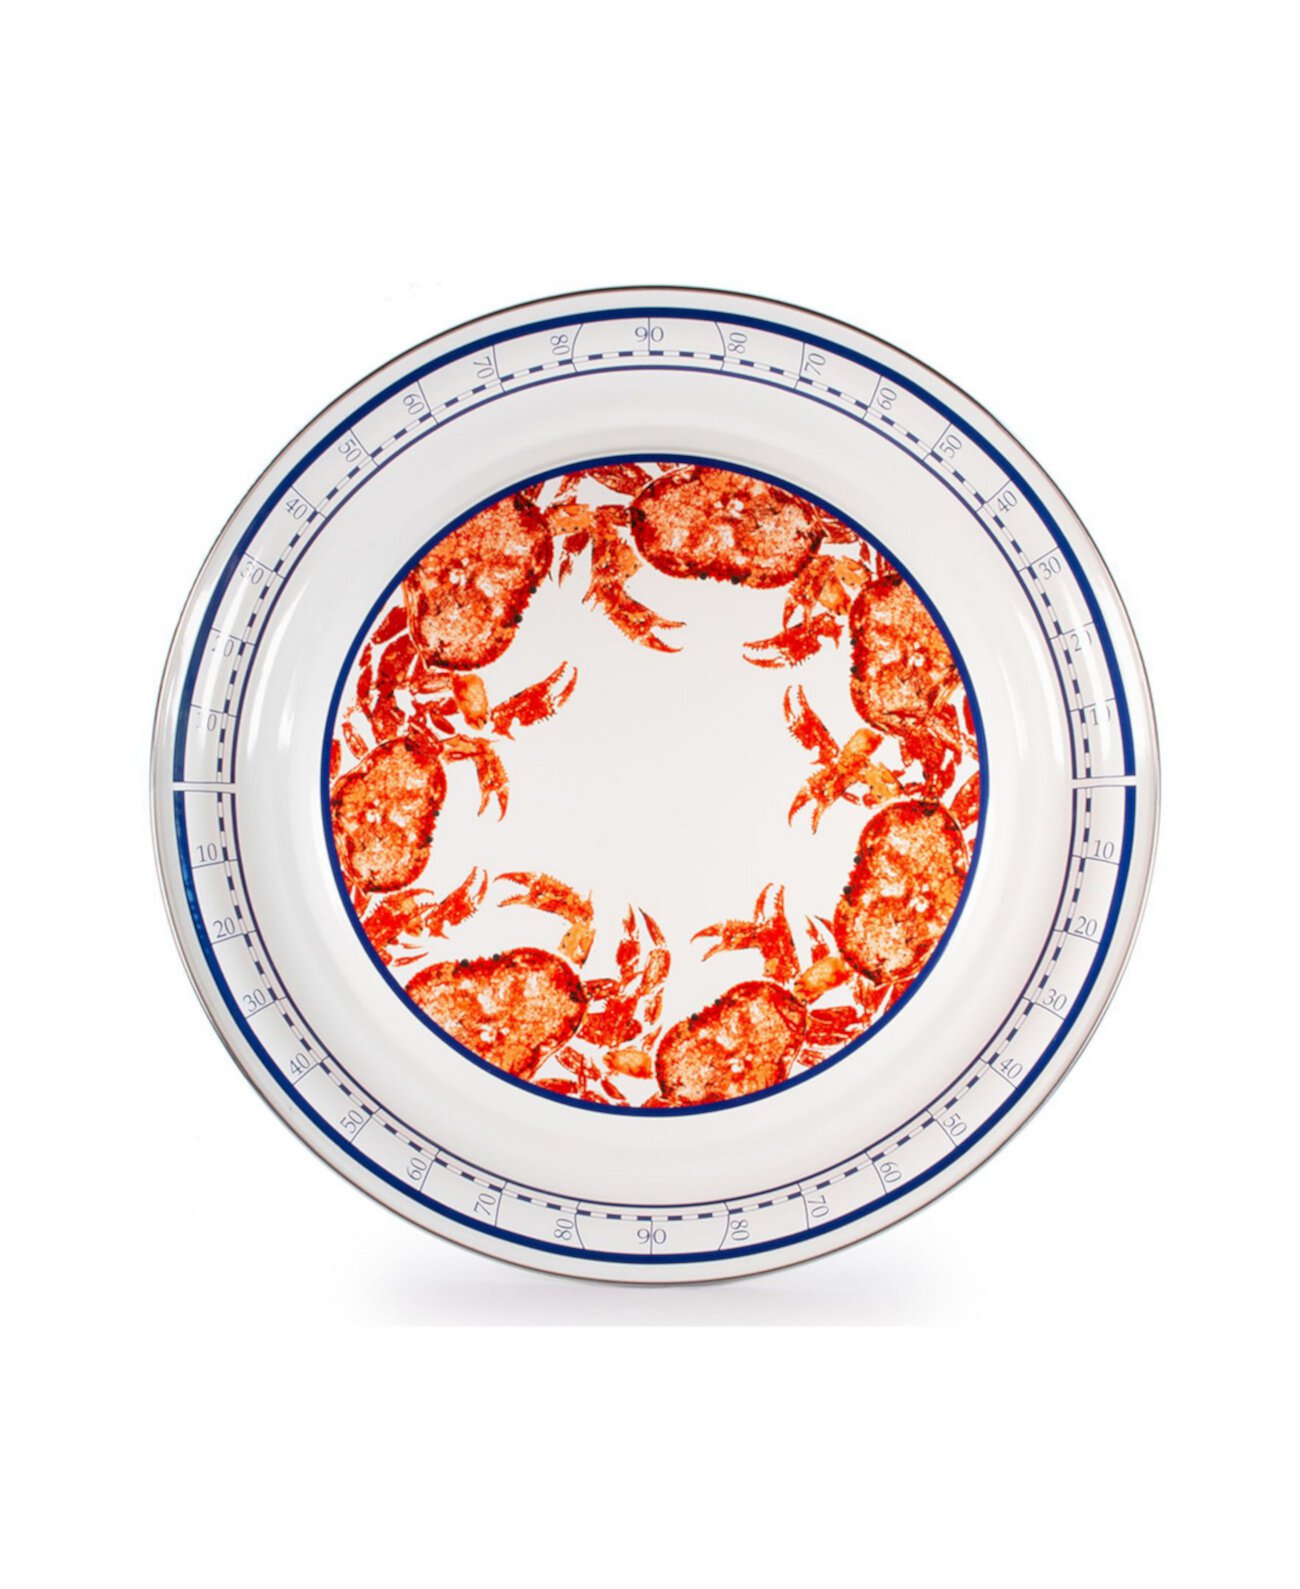 Коллекция эмалированной посуды Crab House, сервировочный поднос 20 дюймов Golden Rabbit